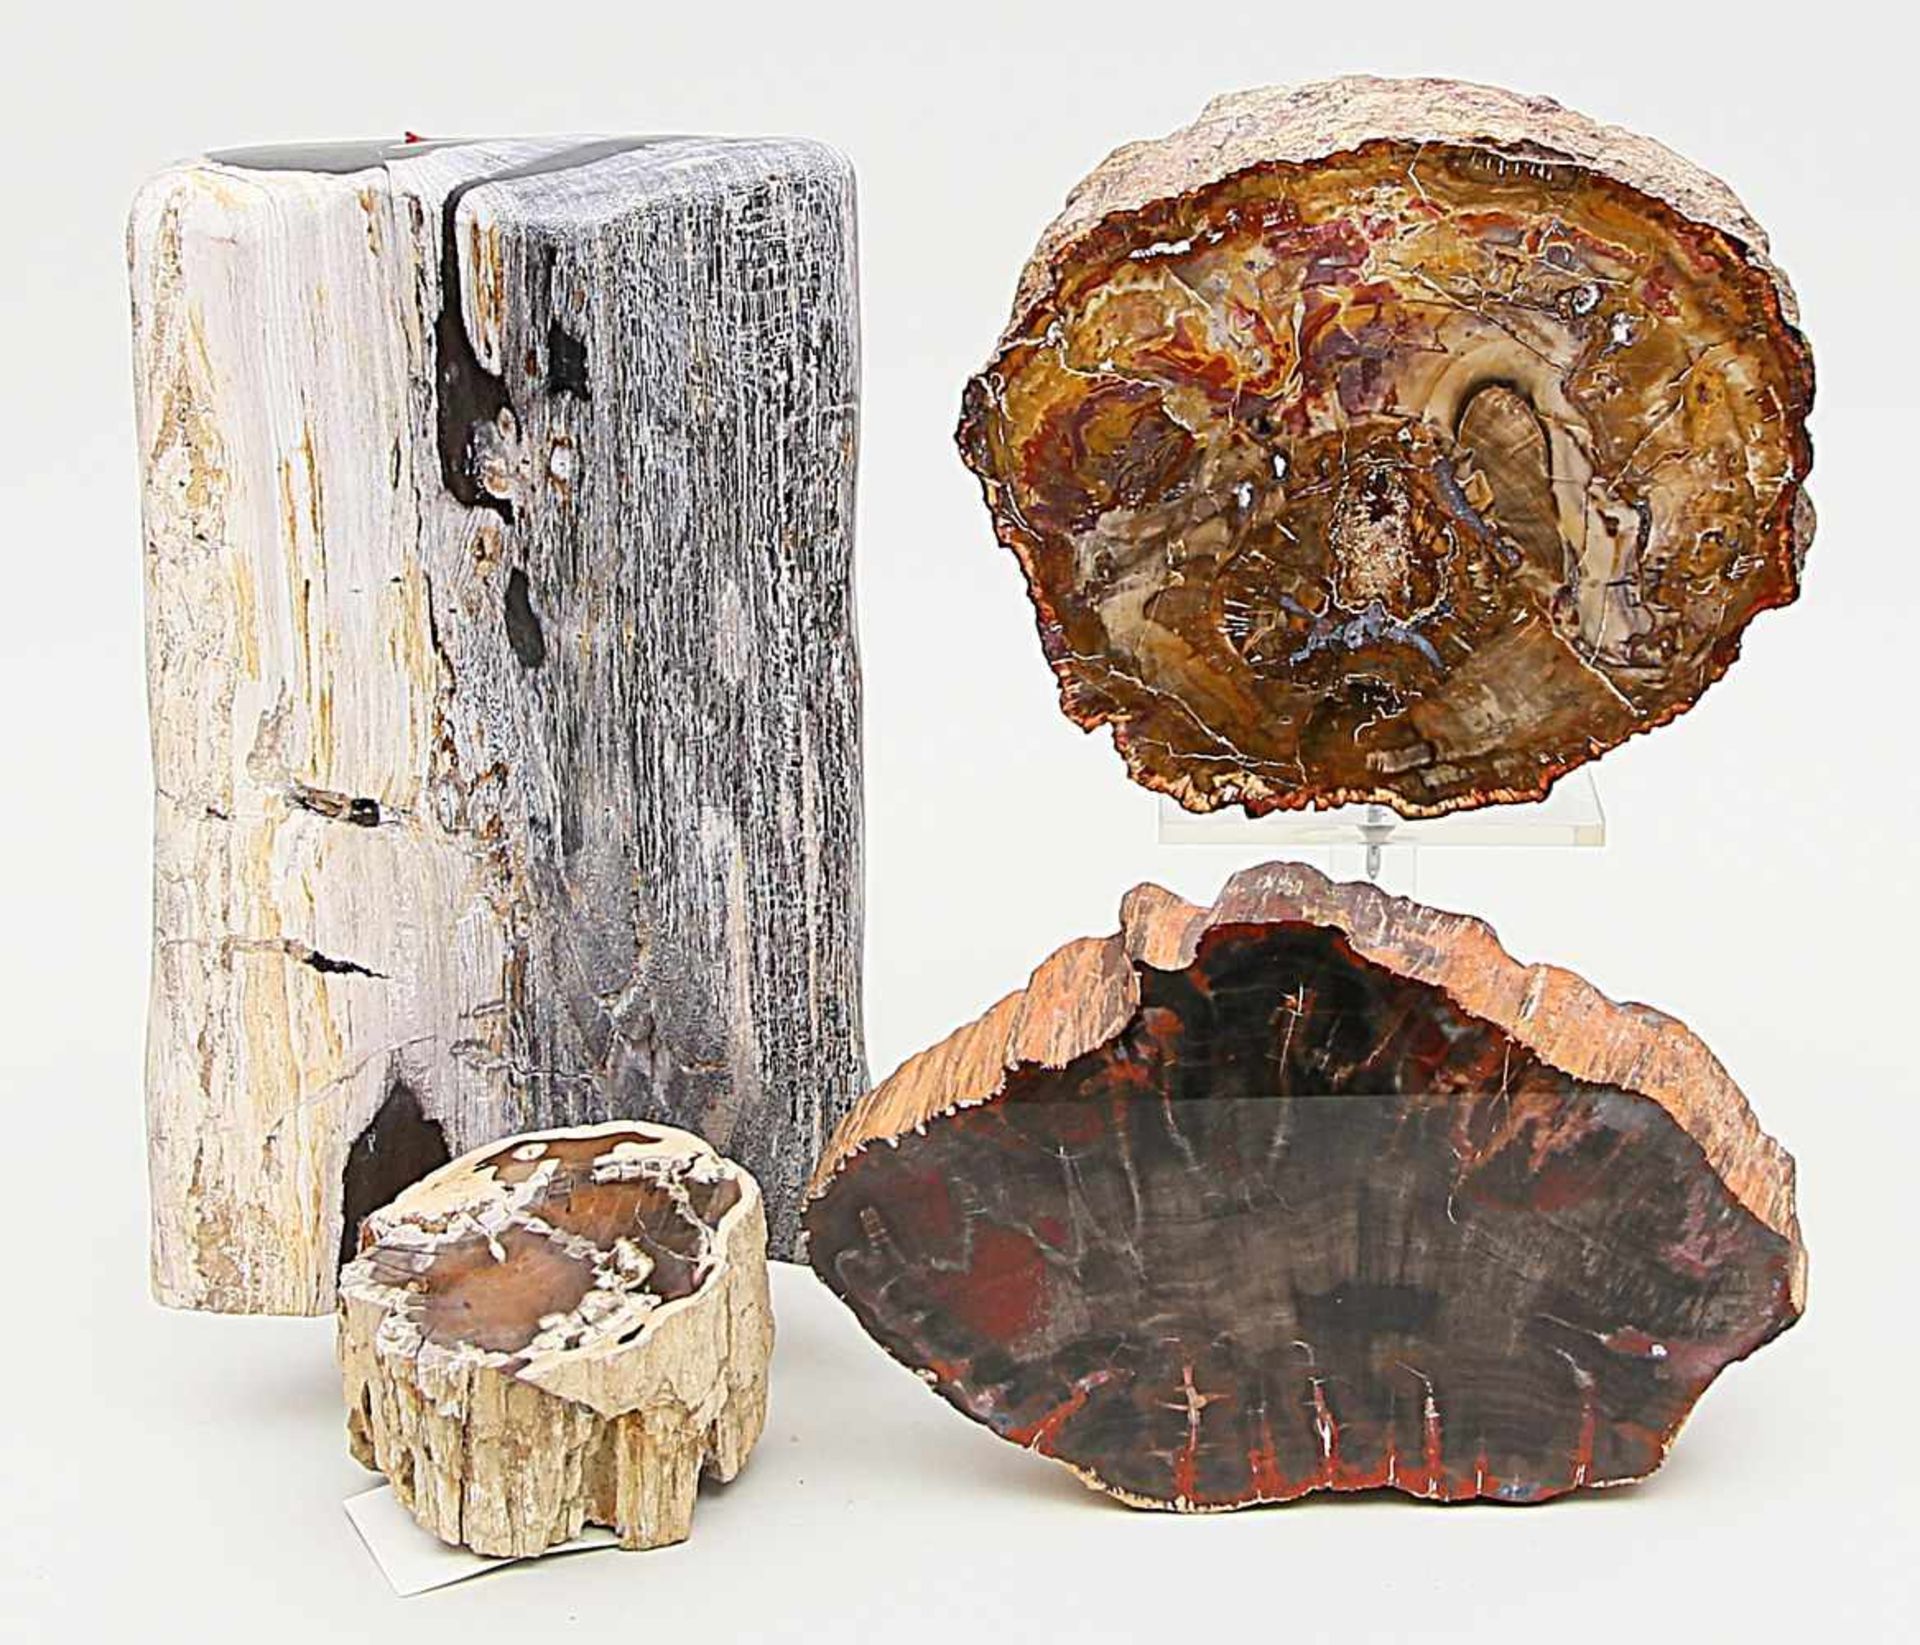 Vier Stücke versteinertes Holz.Jeweils angeschnitten bzw. -poliert. U.a. Arizona, USA. D. 7,5x 9,